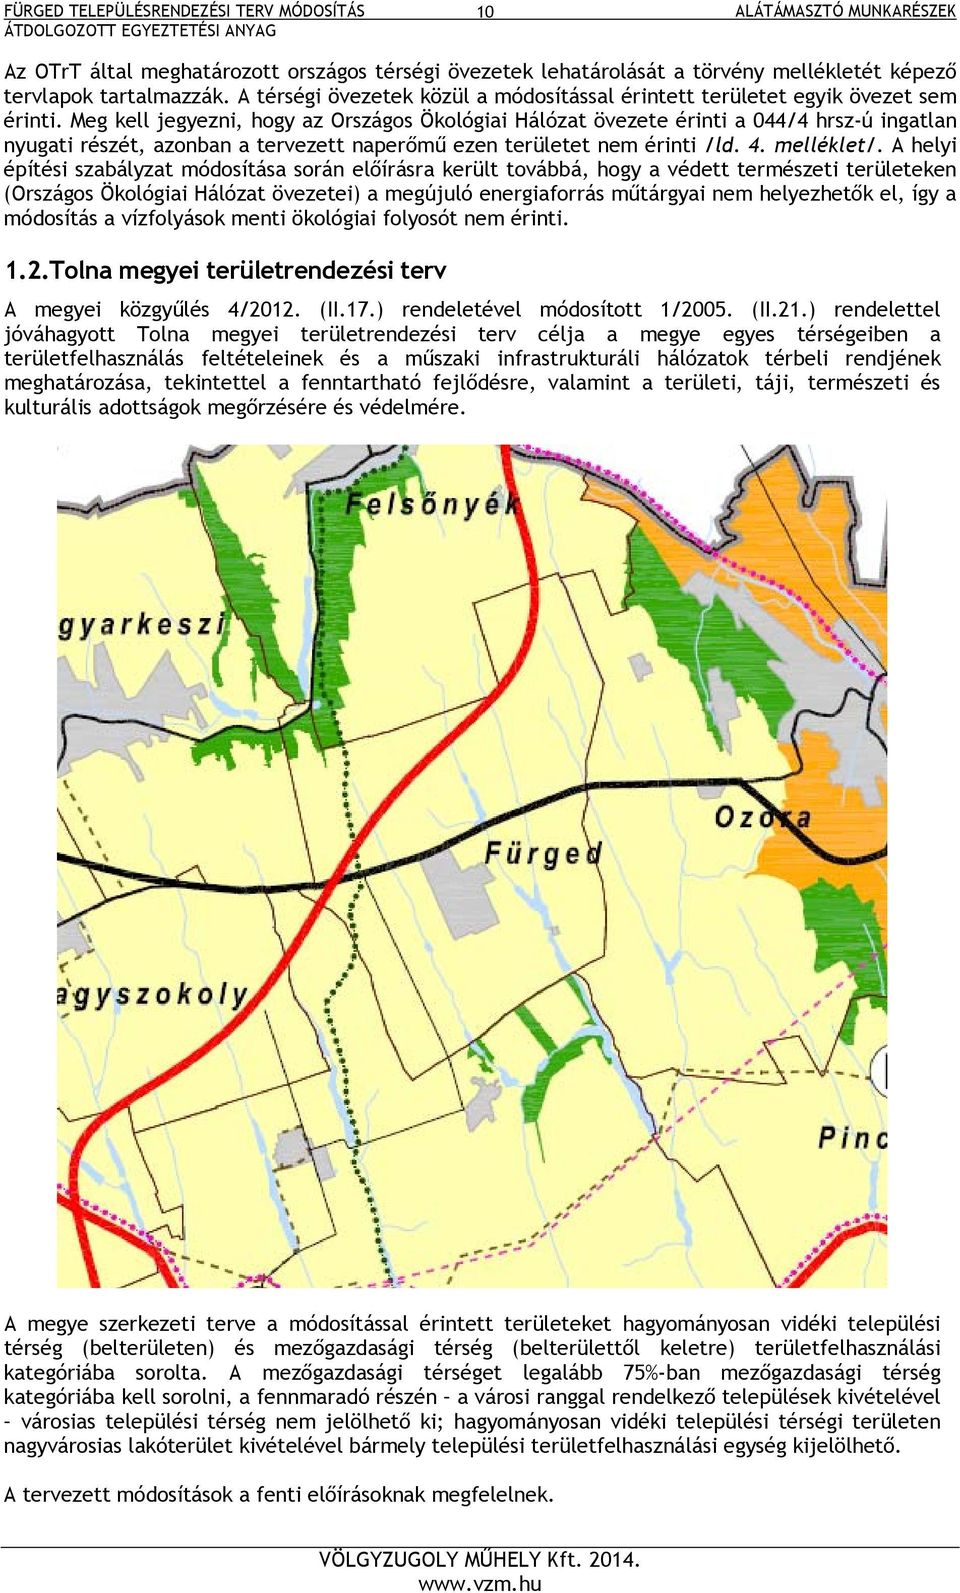 Meg kell jegyezni, hogy az Országos Ökológiai Hálózat övezete érinti a 044/4 hrsz-ú ingatlan nyugati részét, azonban a tervezett naperőmű ezen területet nem érinti /ld. 4. melléklet/.